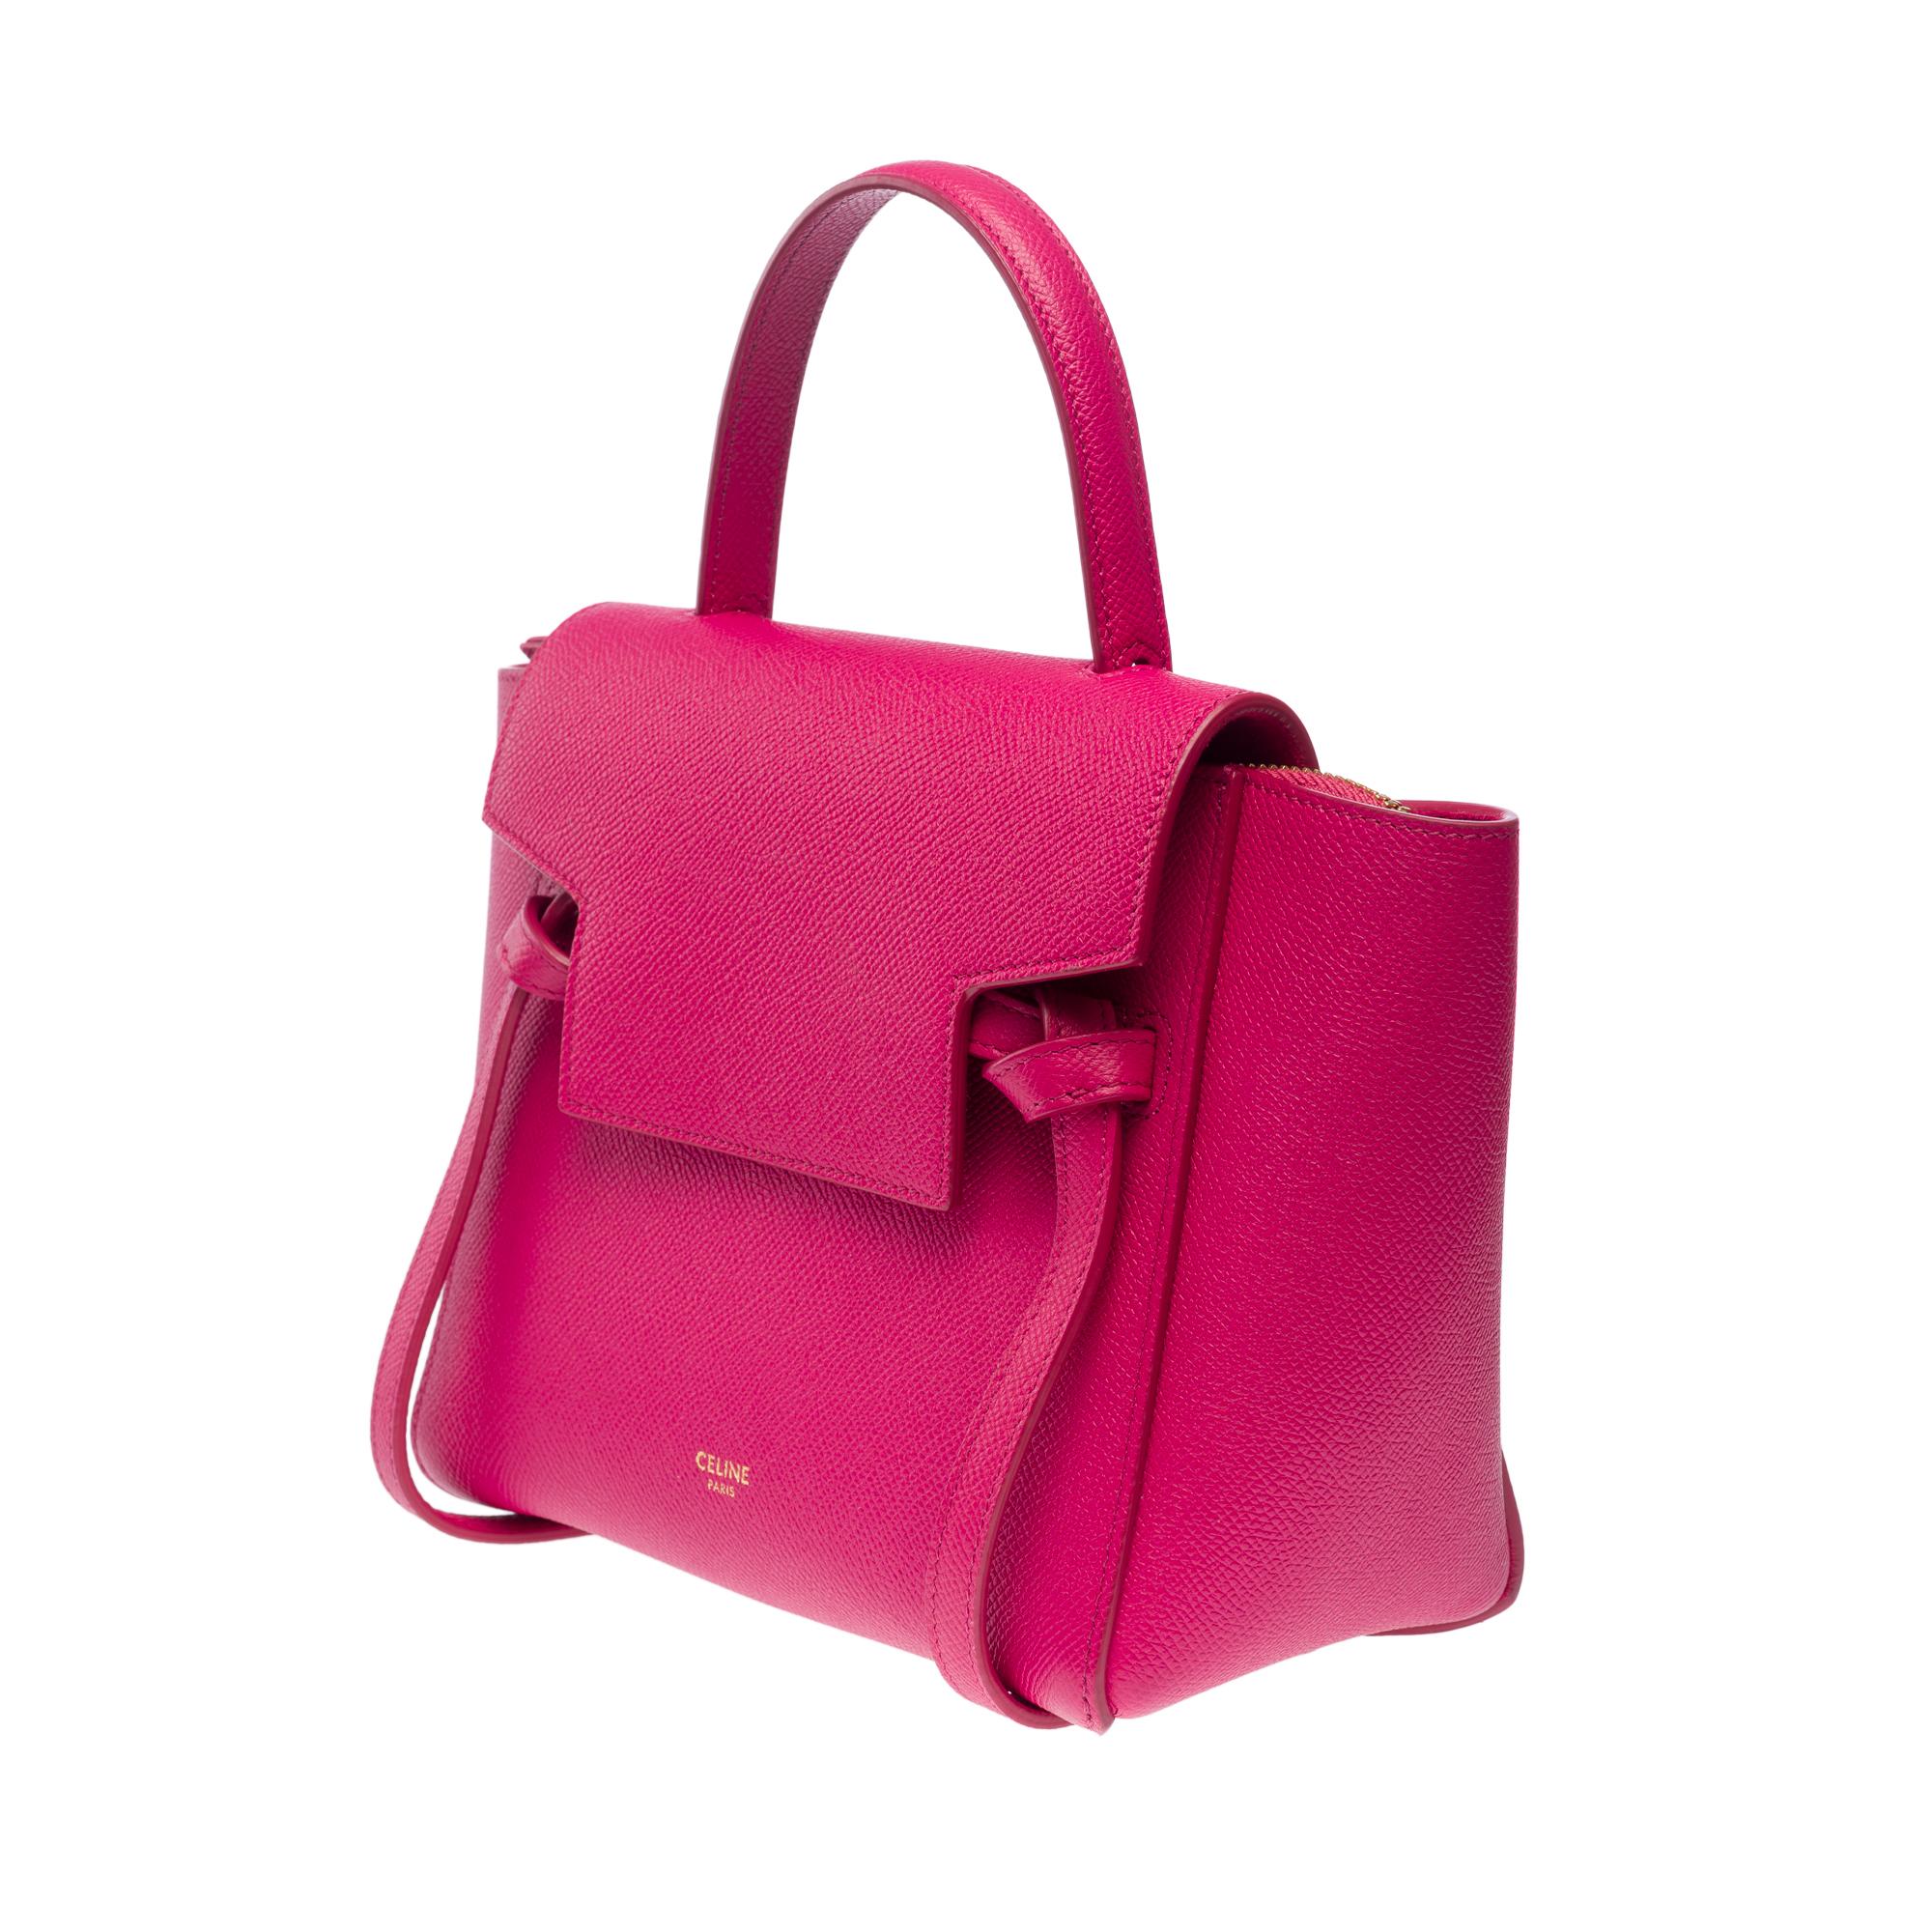 Celine Belt Nano handbag strap in pink calf leather, GHW For Sale 2